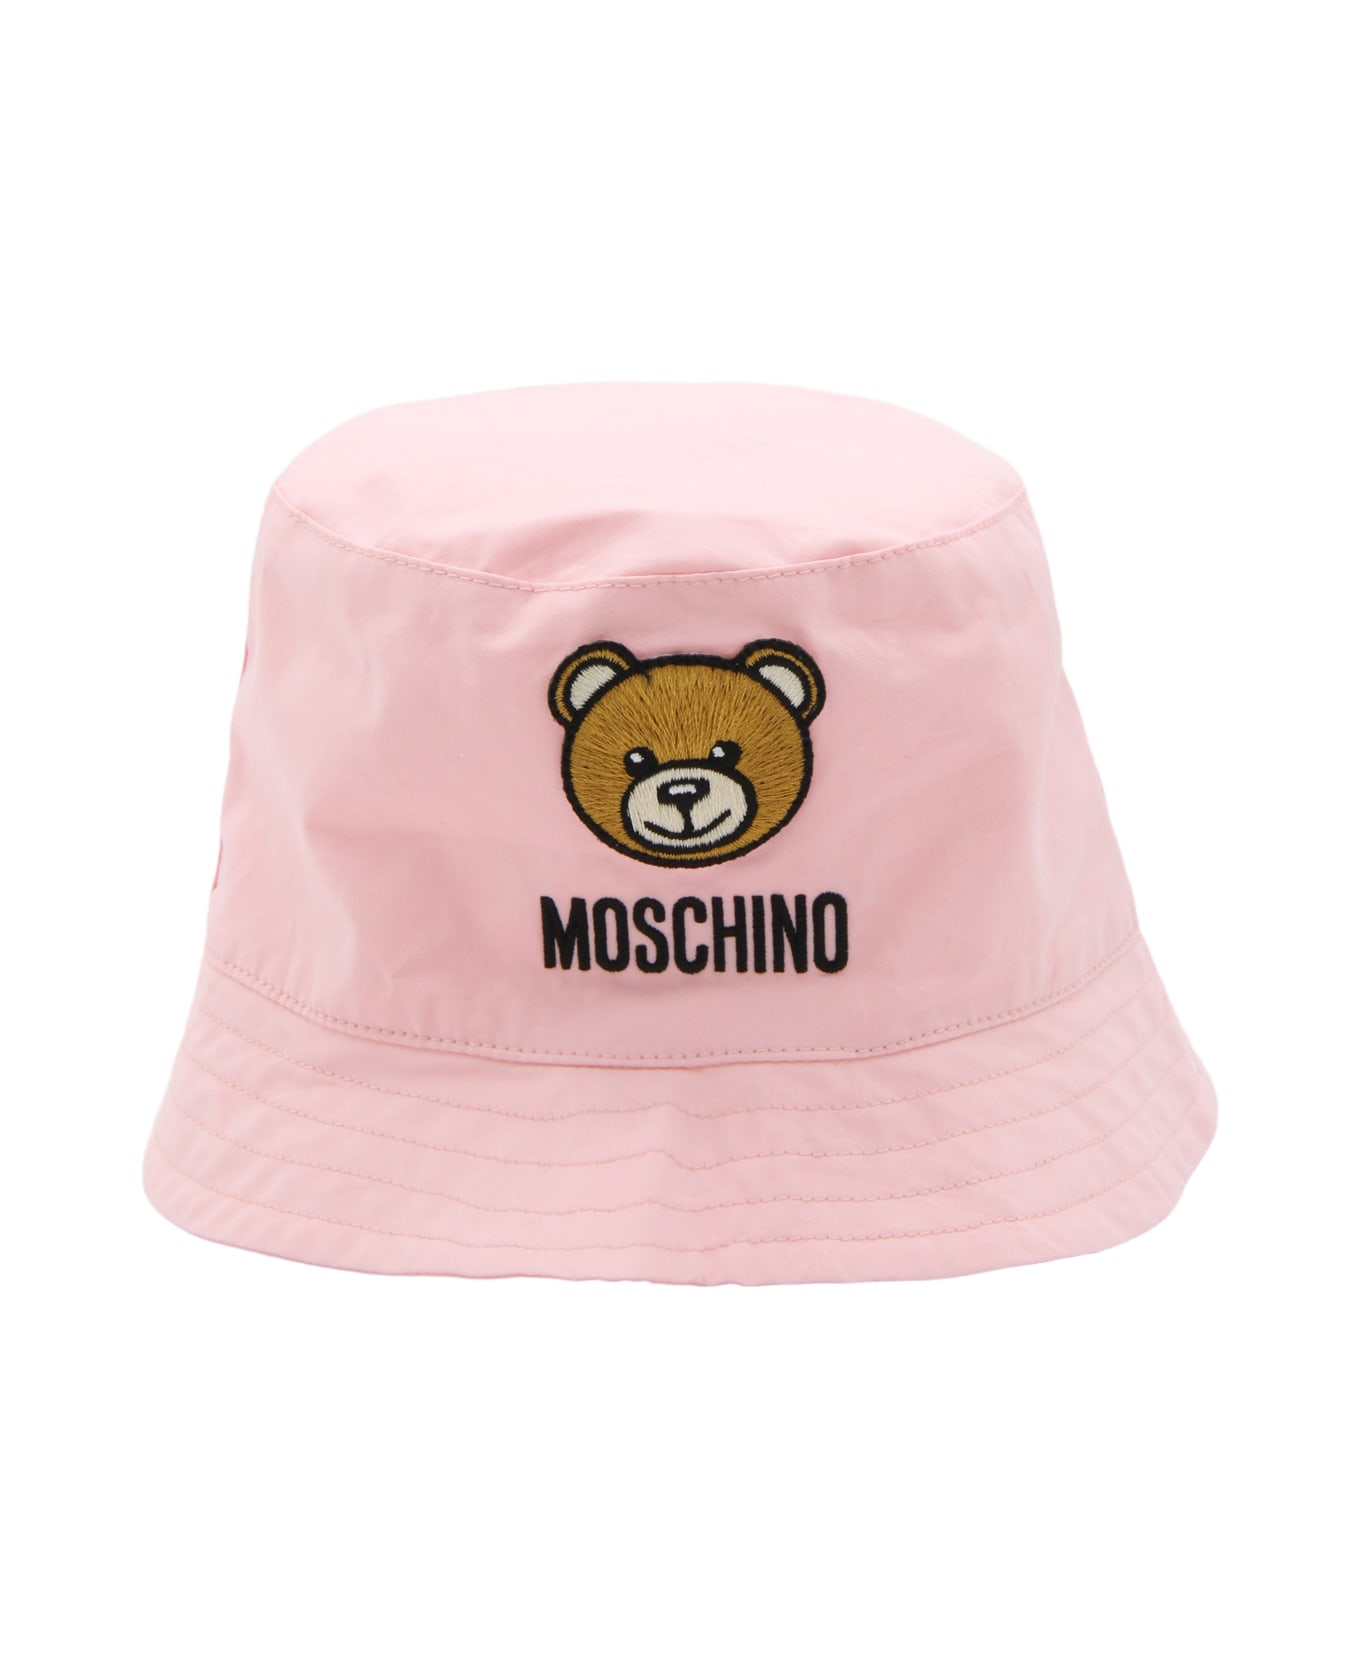 Moschino Pink Cotton Bucket Hat - SUGAR ROSE